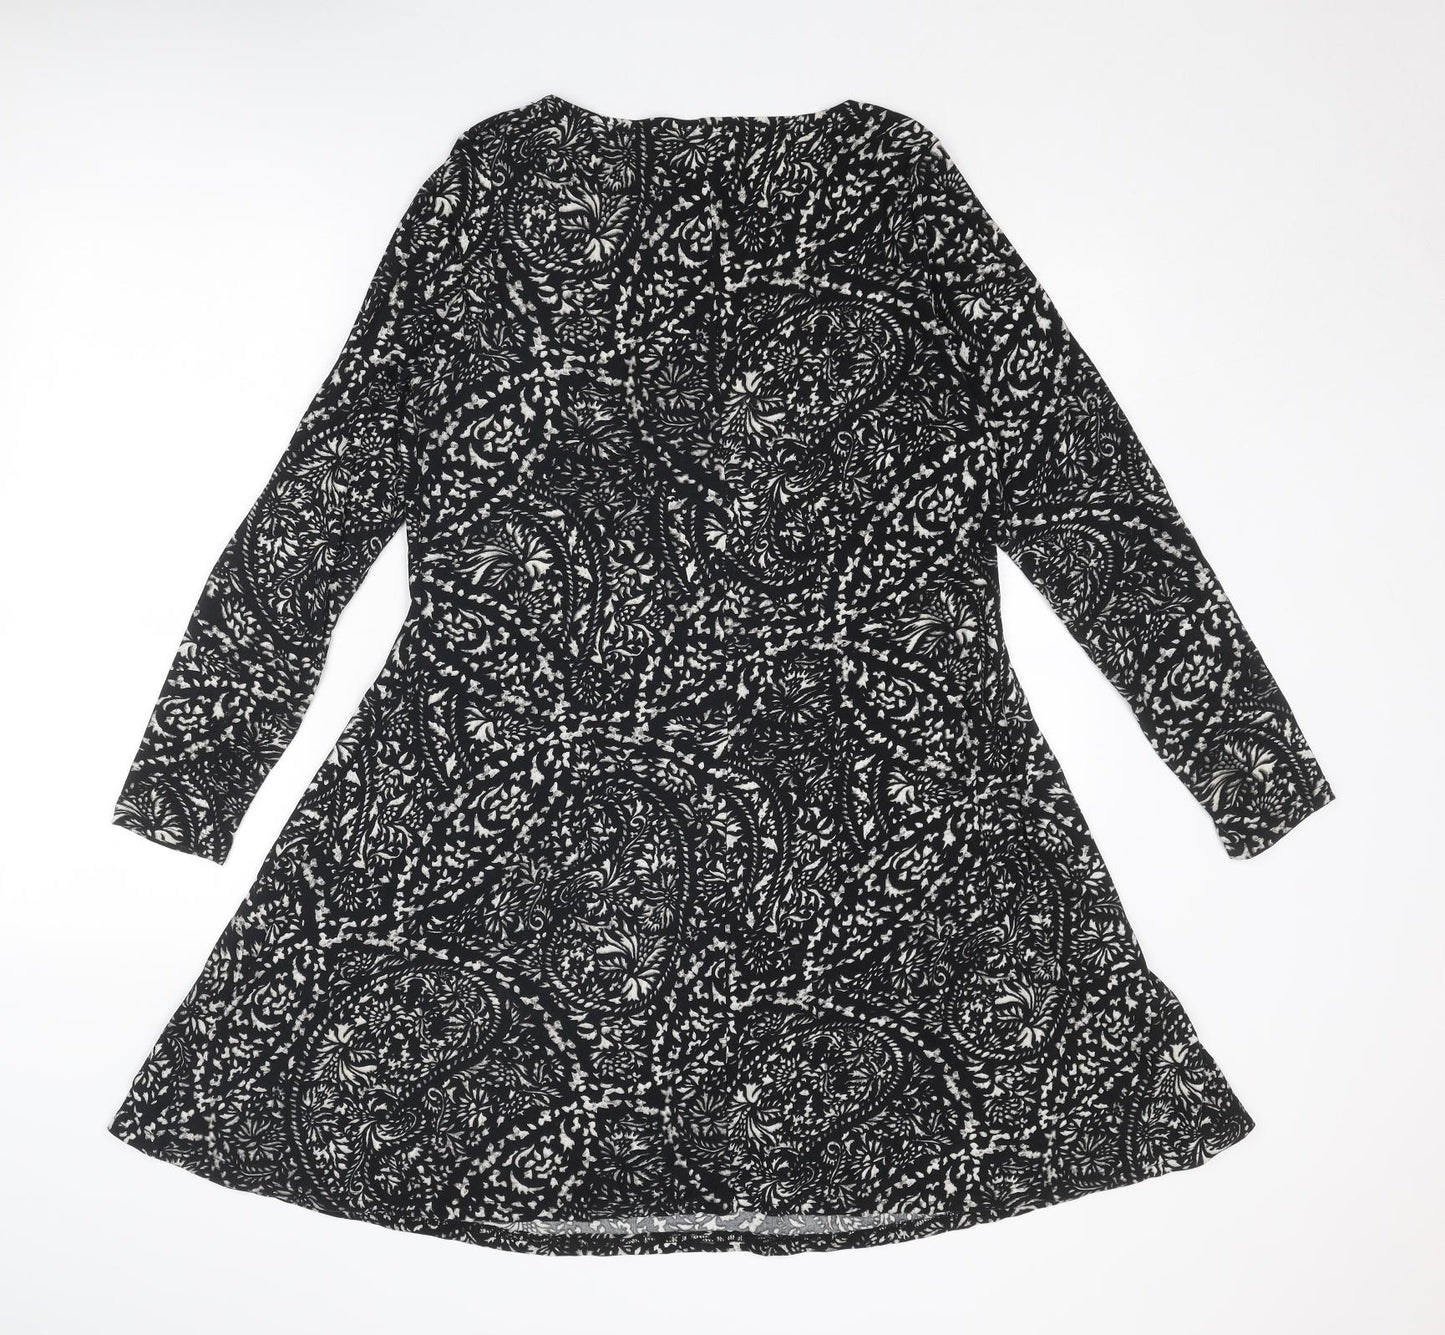 Diva Feva Womens Black Geometric Polyester Jumper Dress Size 12 Round Neck Pullover